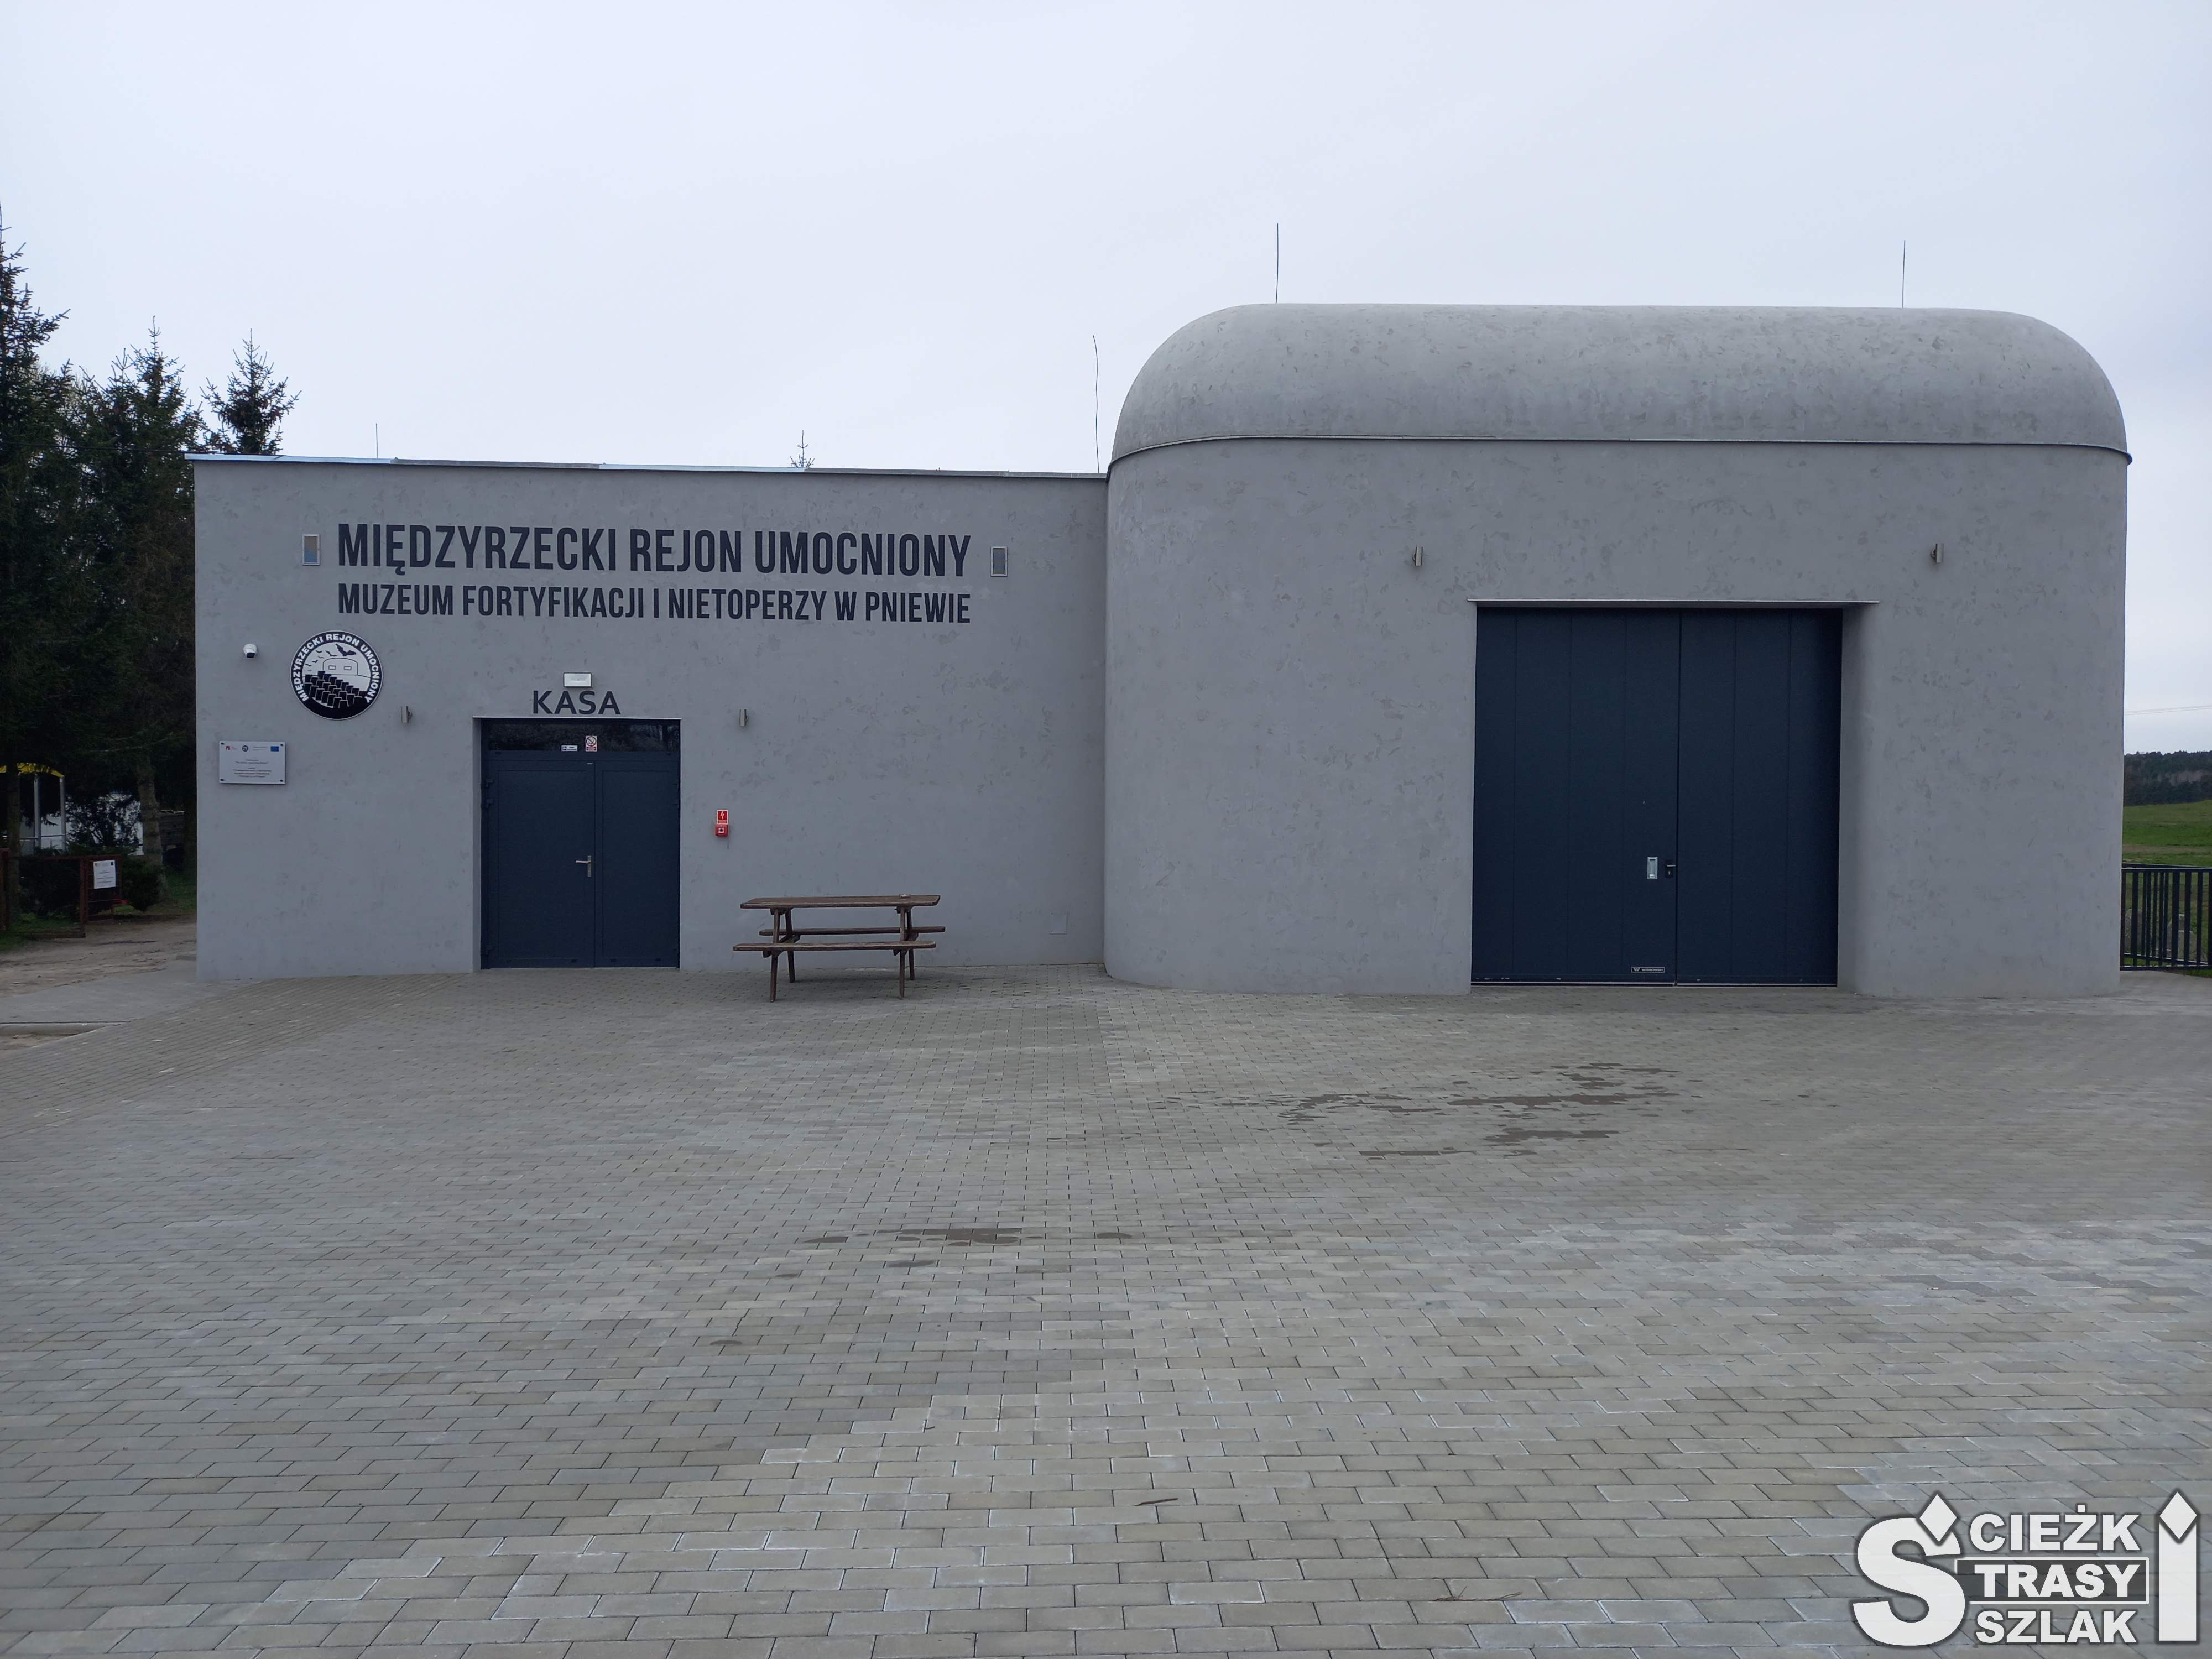 Drzwi wejściowe do Muzeum Fortyfikacji i Nietoperzy w Pniewie w betonowym bunkrze